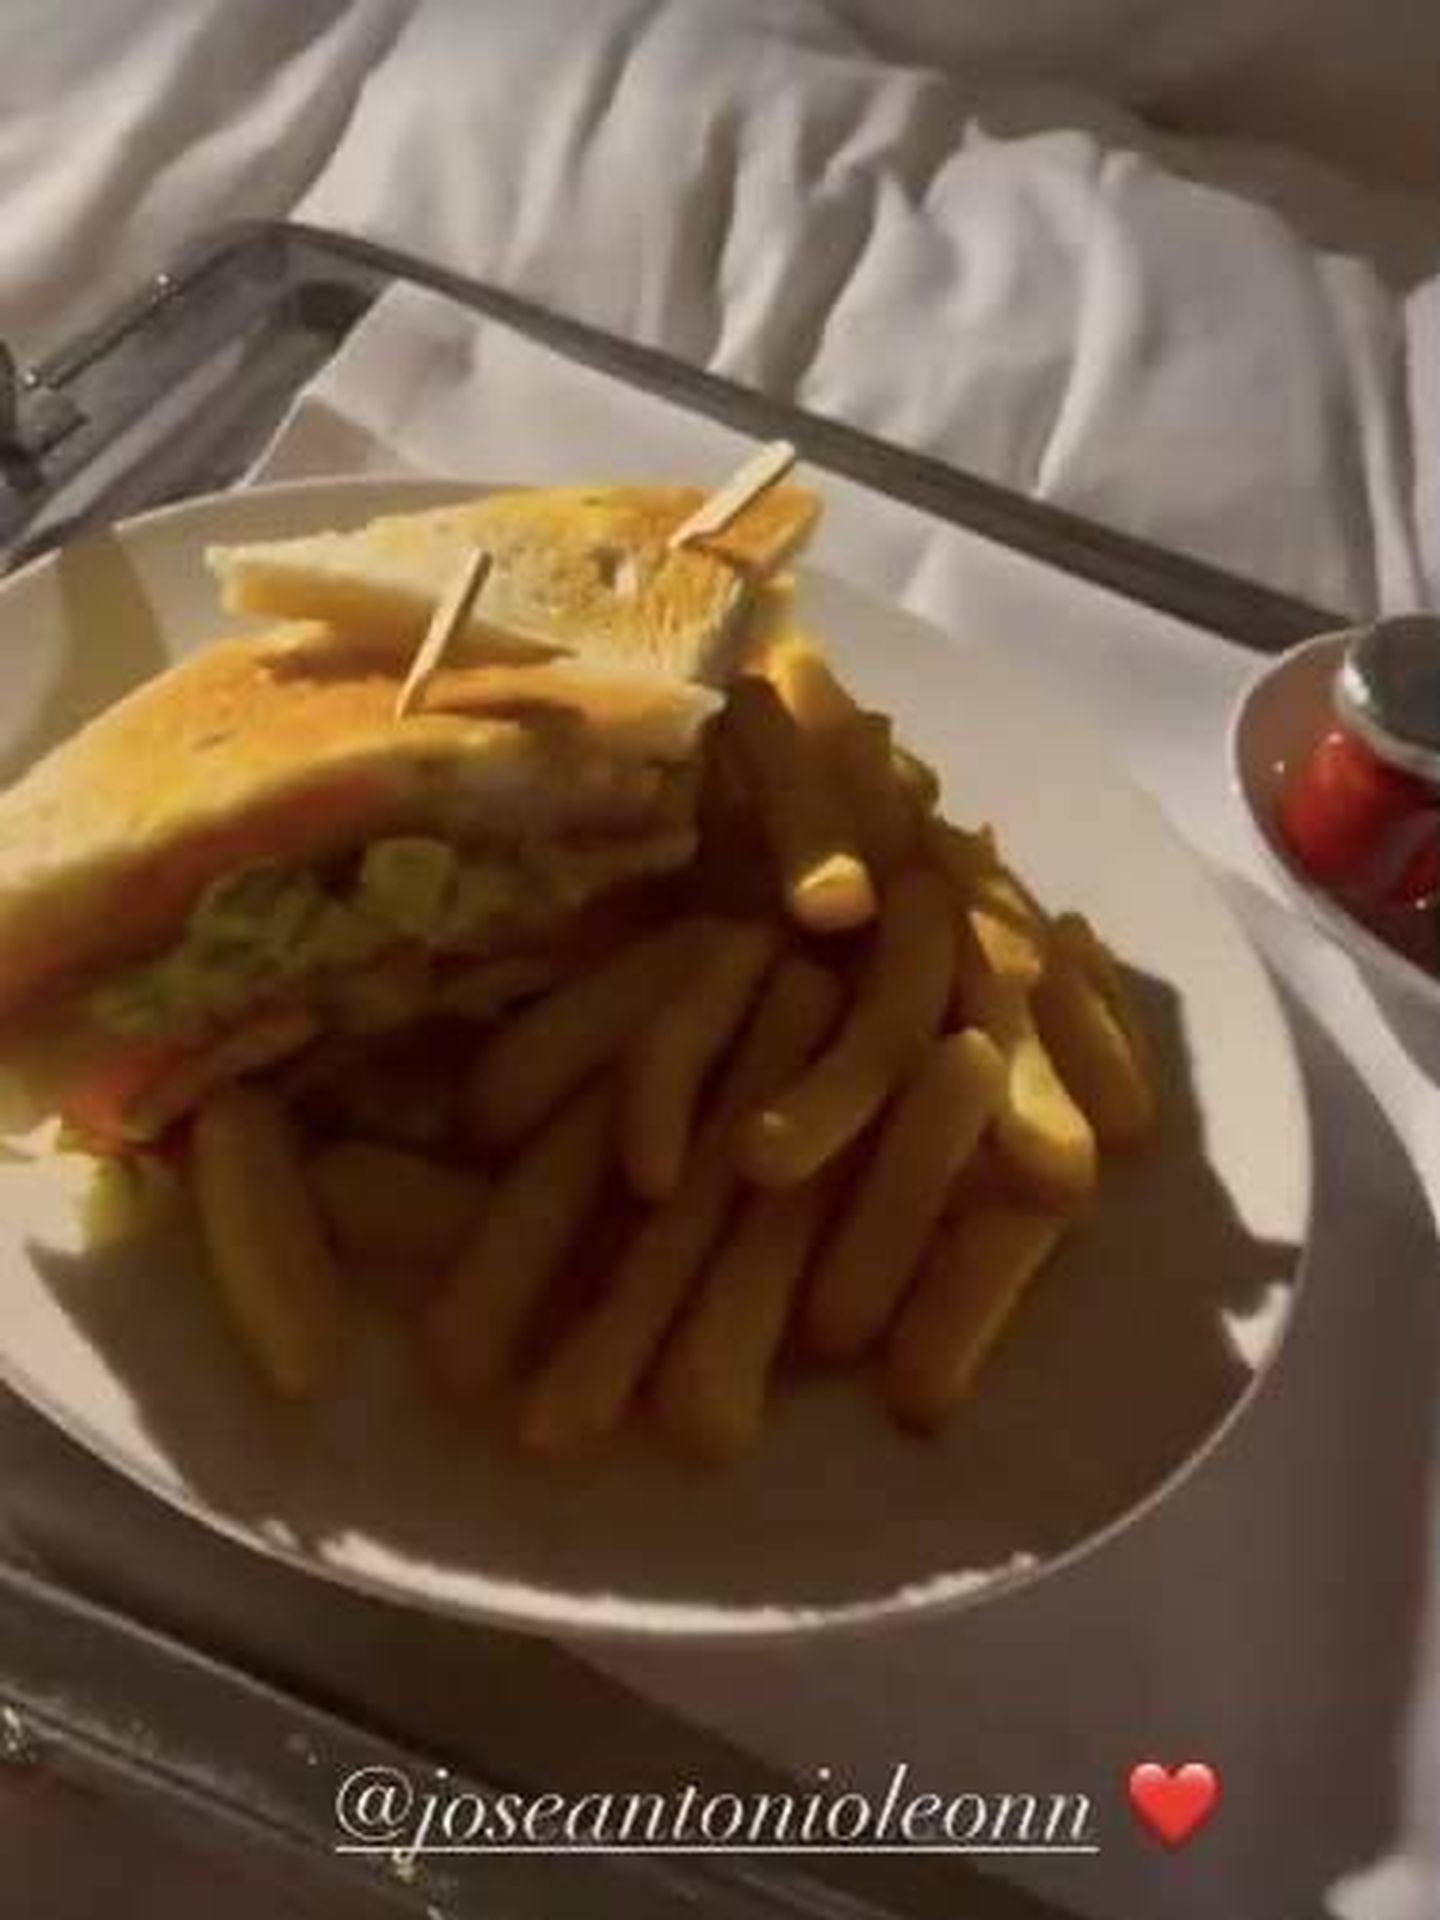 El sándwich que el novio sirvió a la novia en la habitación del hotel. (IG)